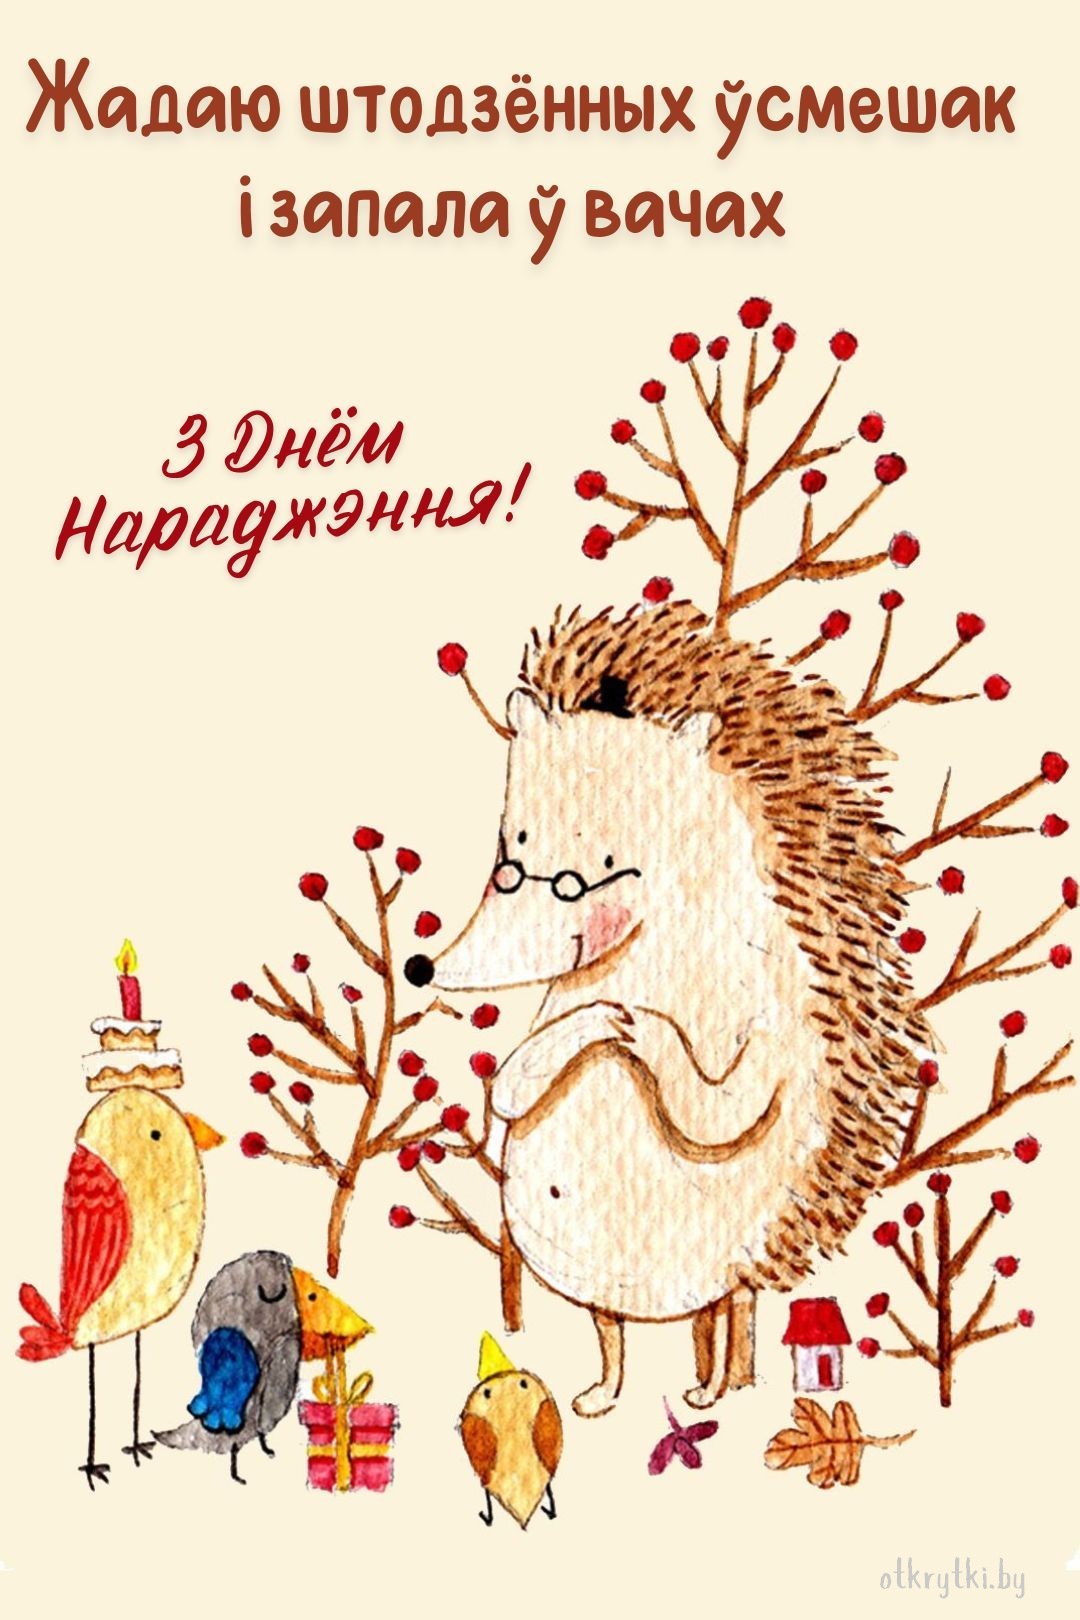 Оригинальная открытка с днем рождения на белорусском языке